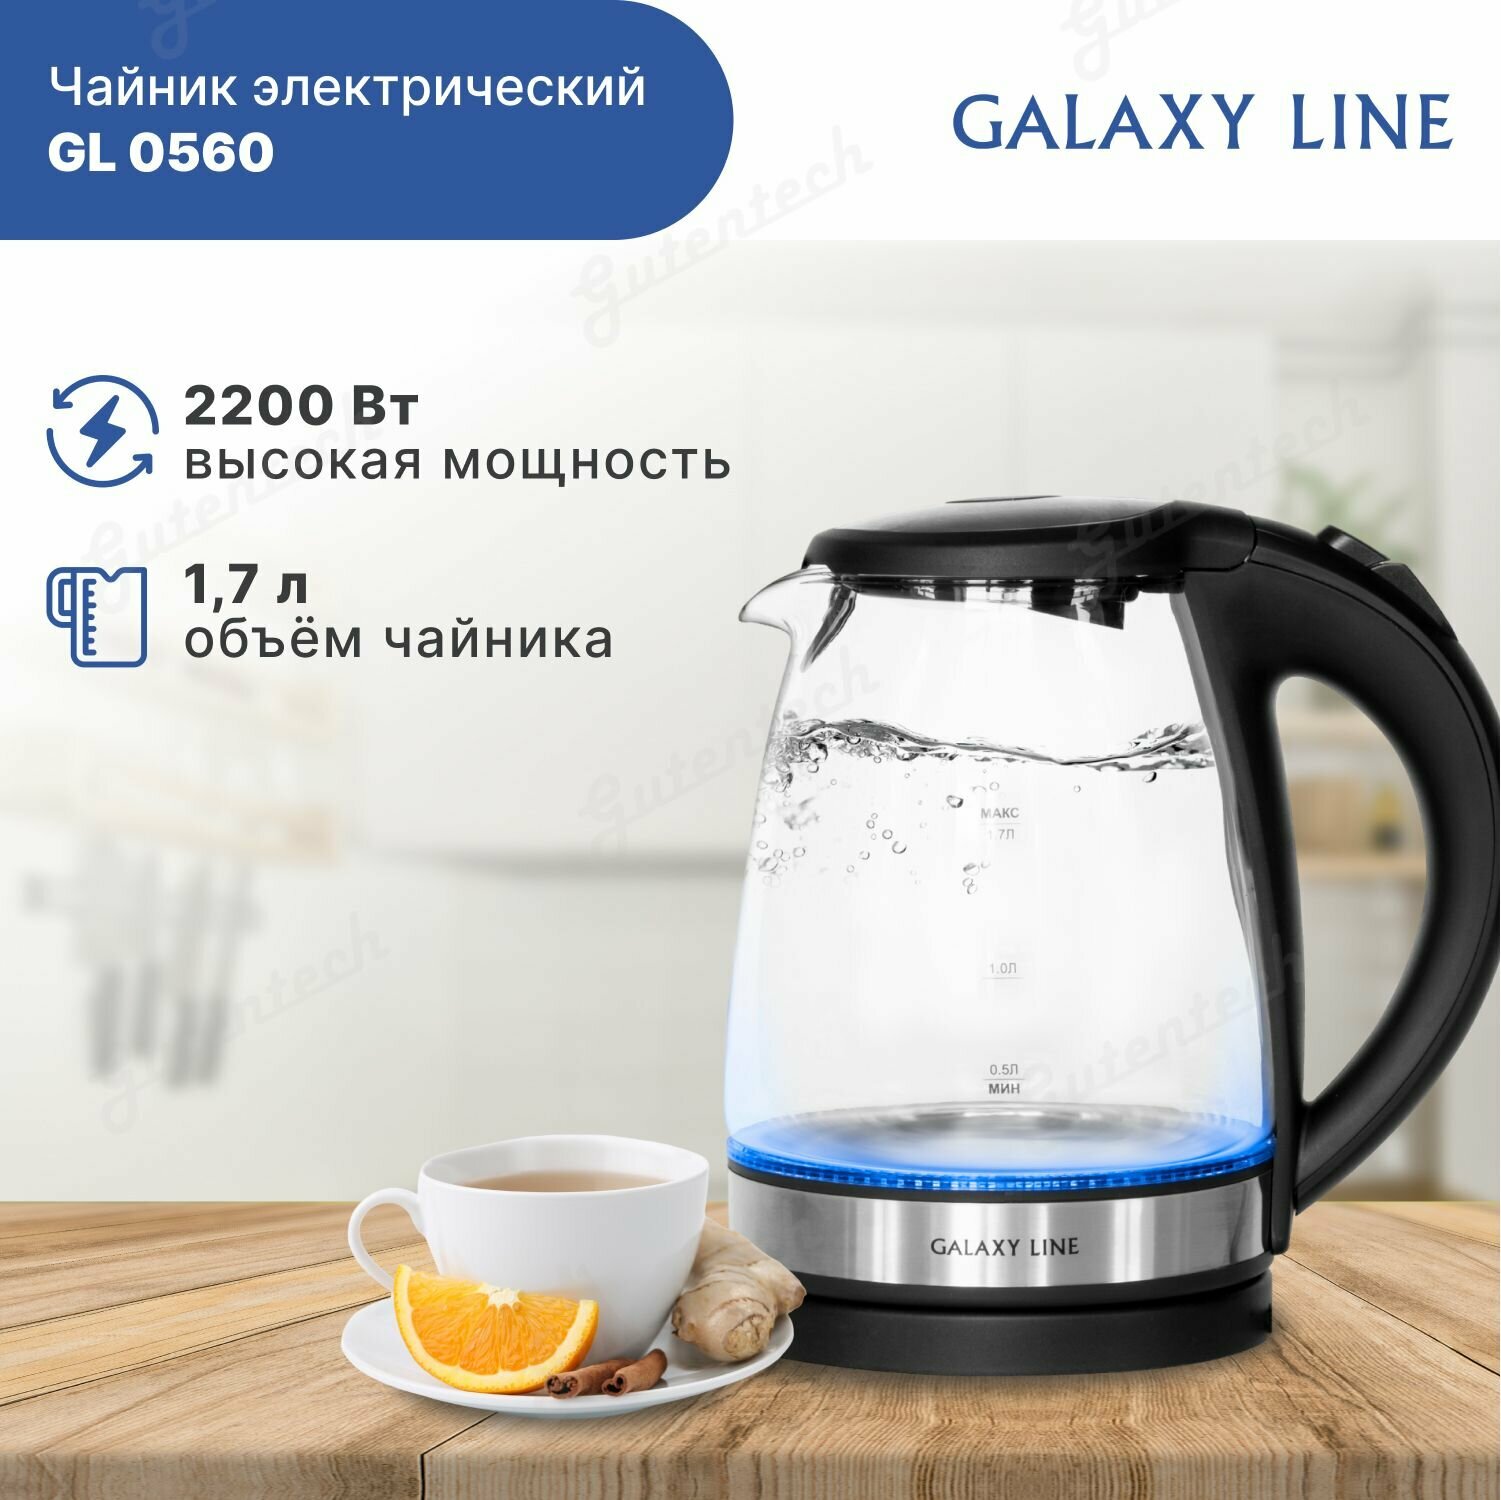 Электрический чайник GALAXY LINE GL 0560 с подсветкой и прозрачным корпусом, 2200Вт, объем 1,7 л, чёрный